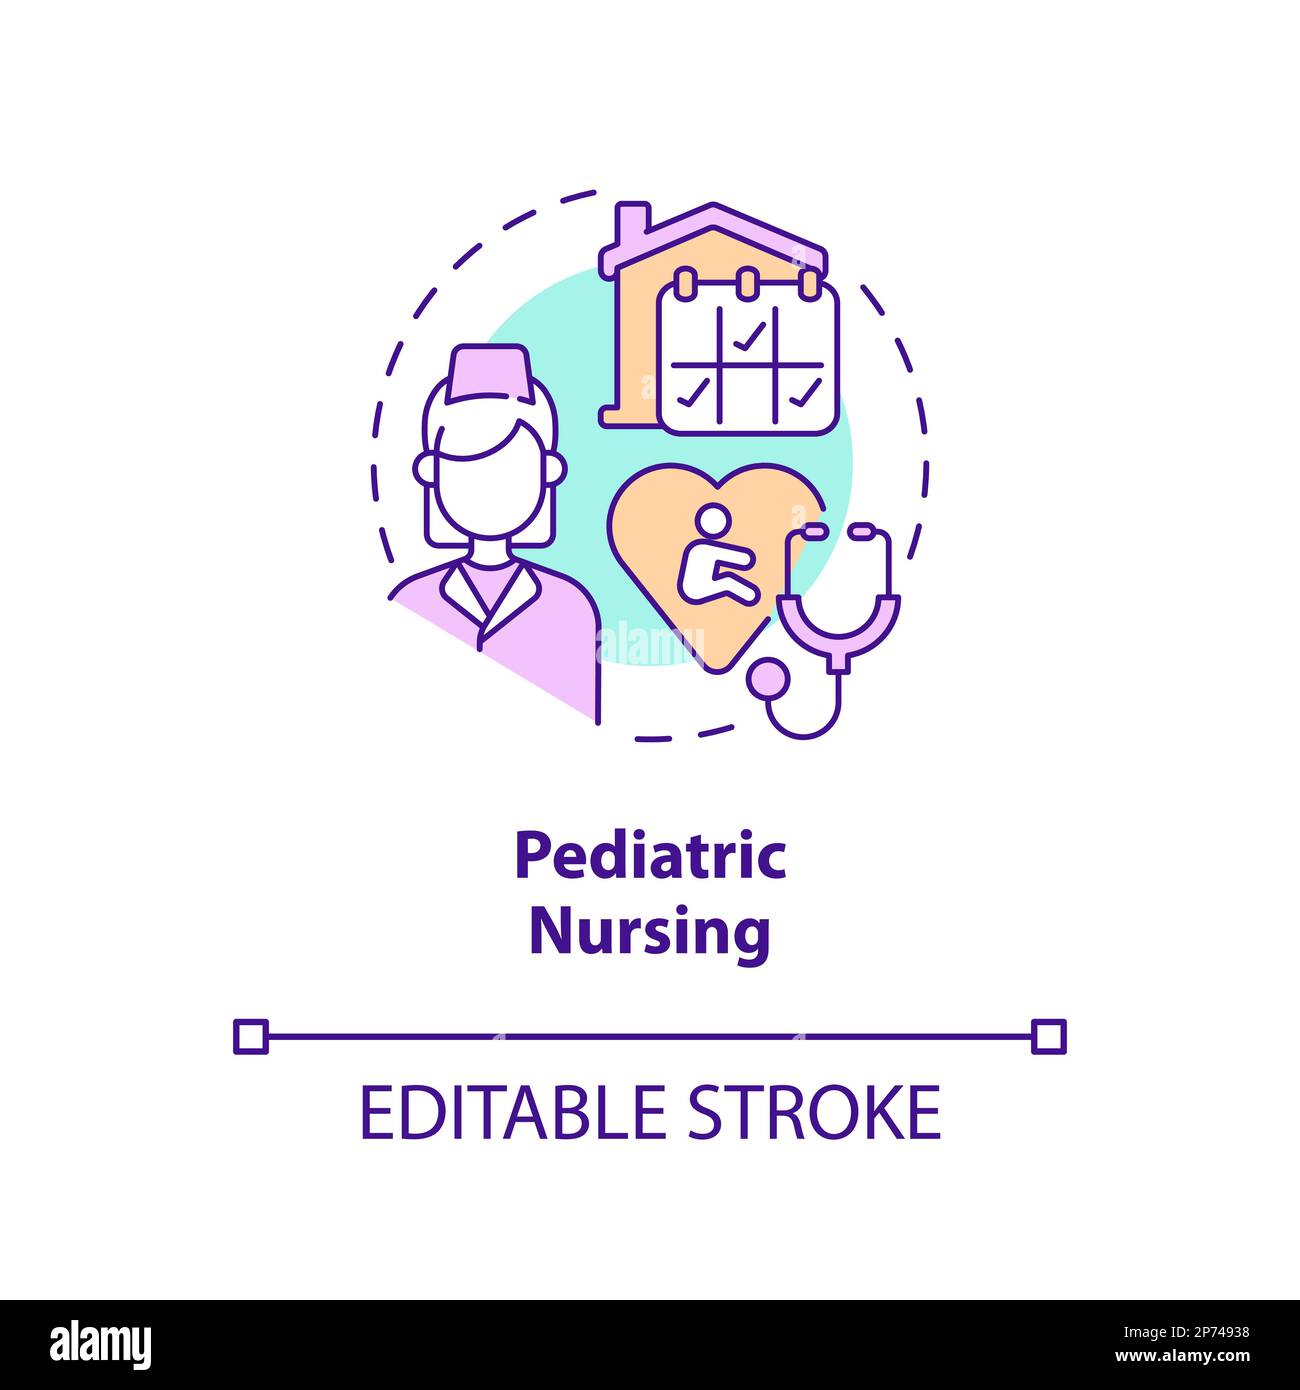 Pediatric nursing concept icon Stock Vector